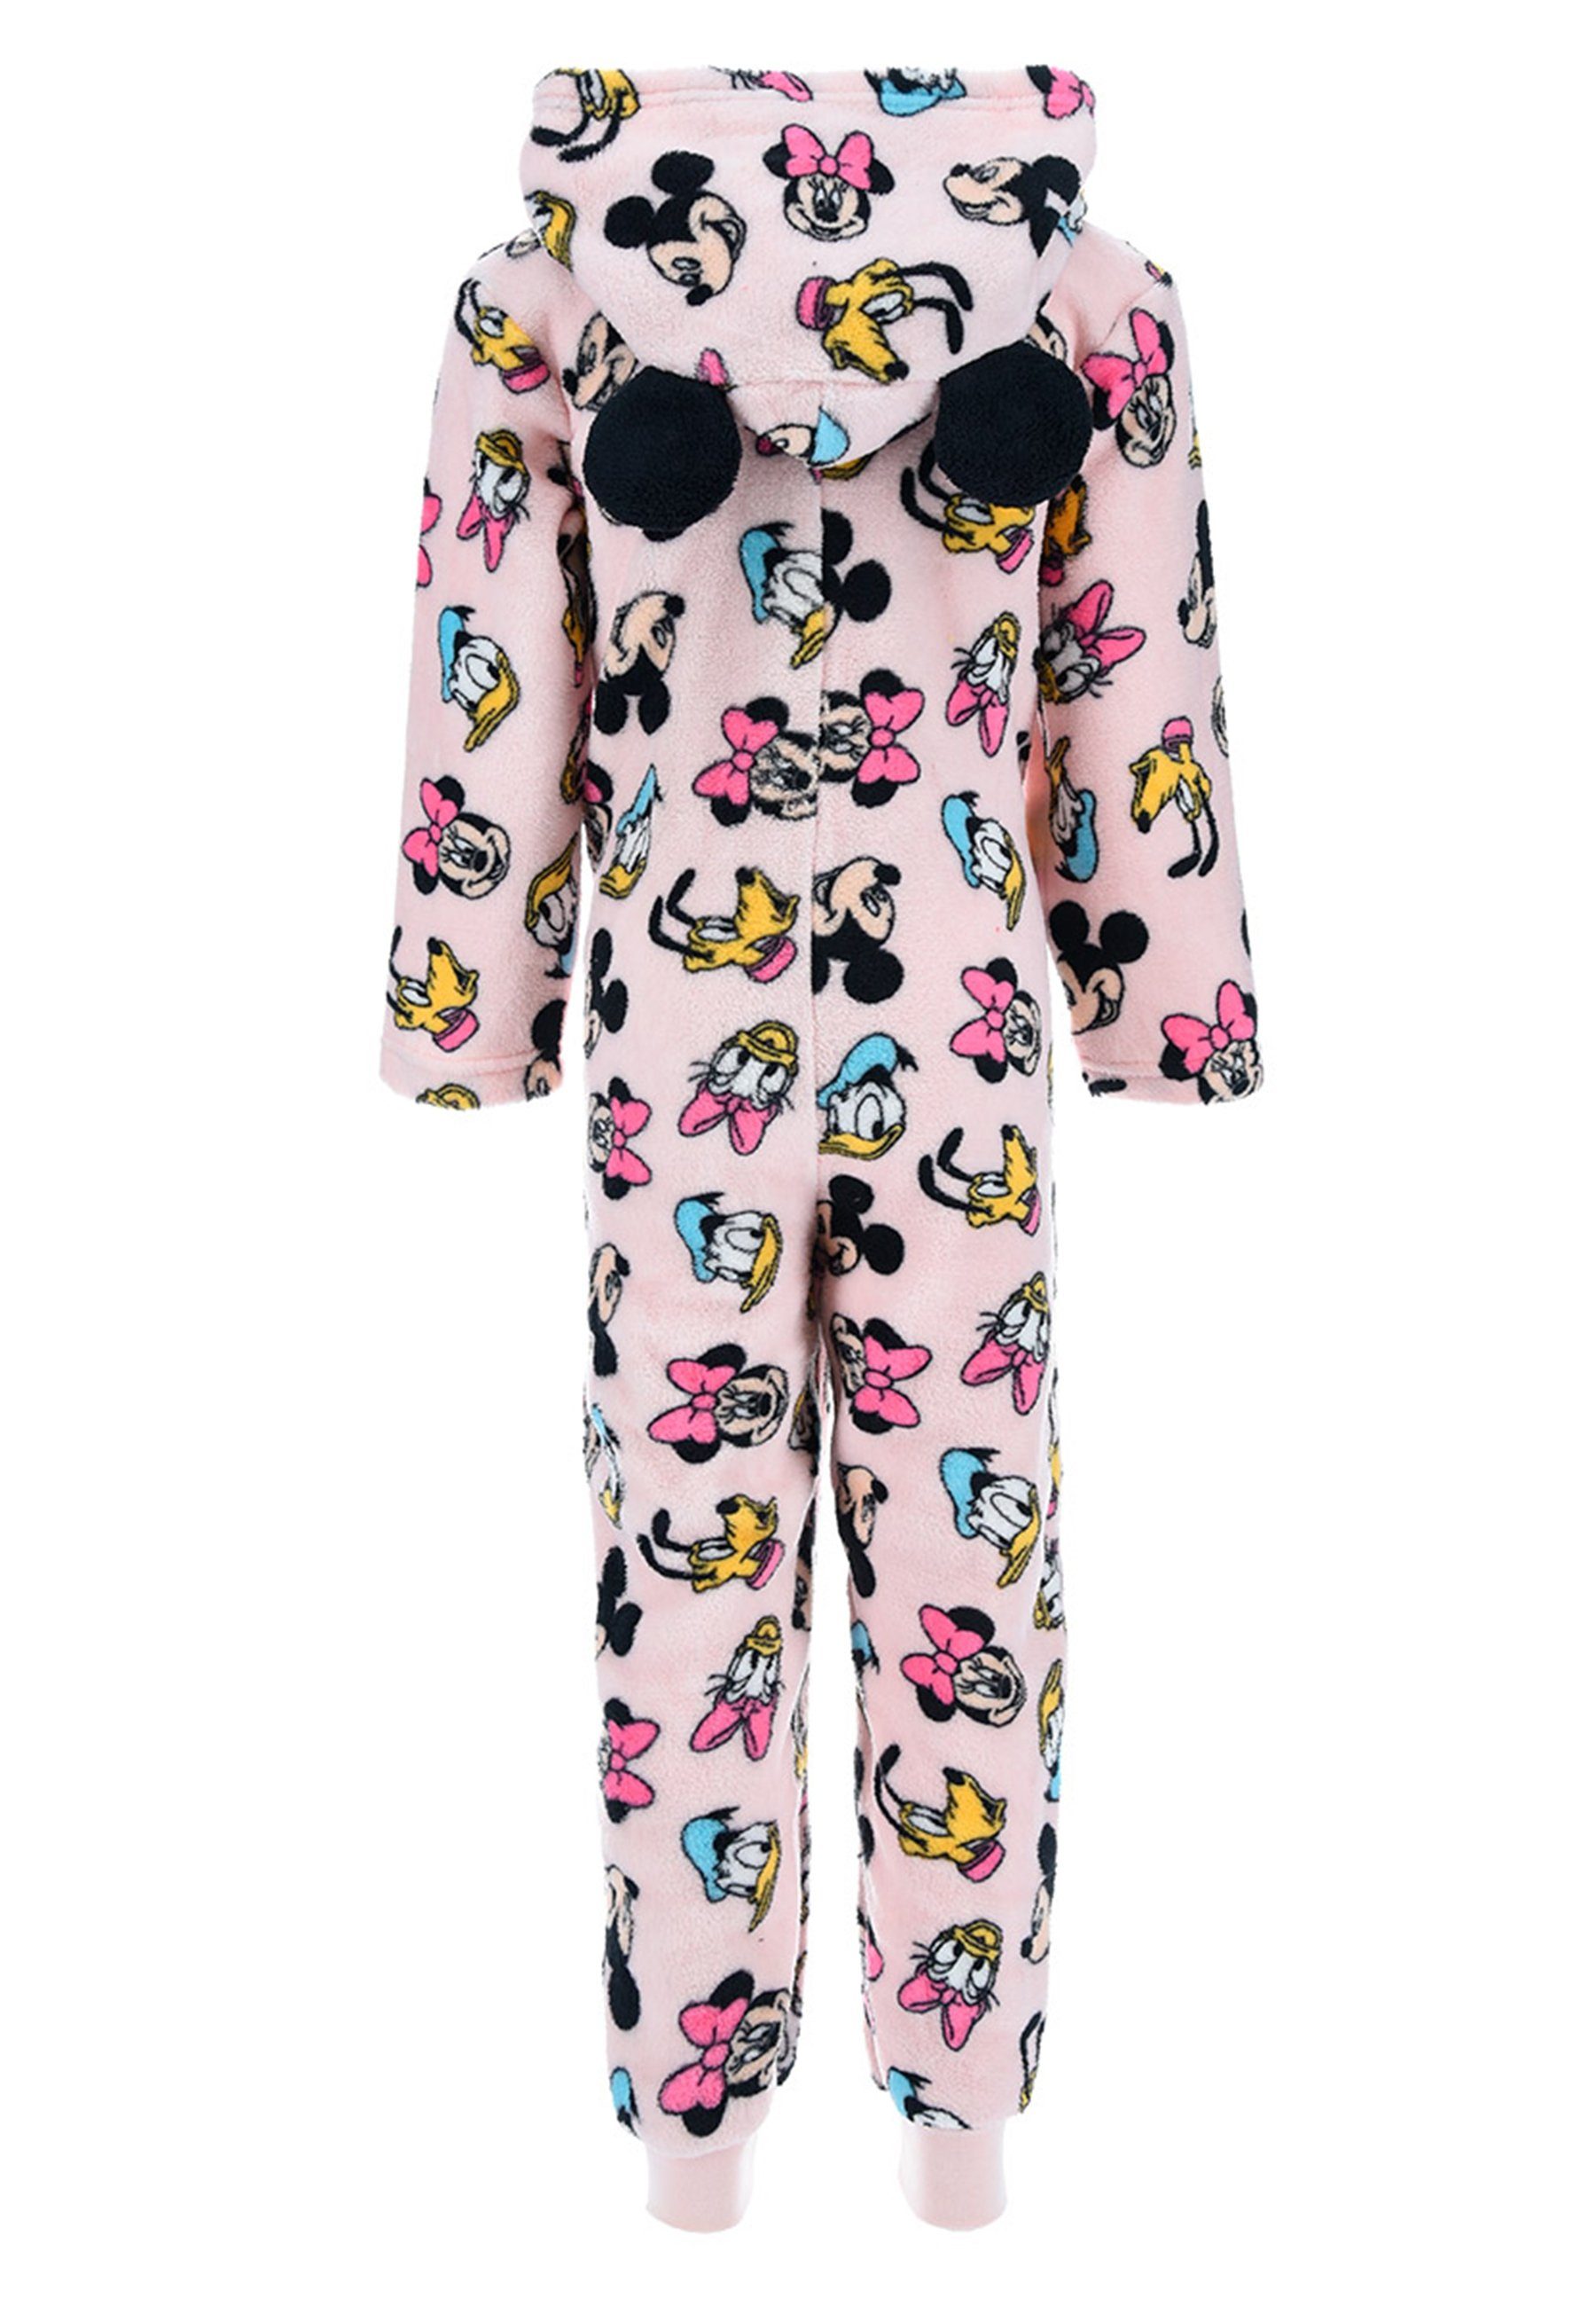 Mouse Schlaf Nachtwäsche langarm Rosa Minnie Schlafanzug Disney Overall Pyjama Mädchen